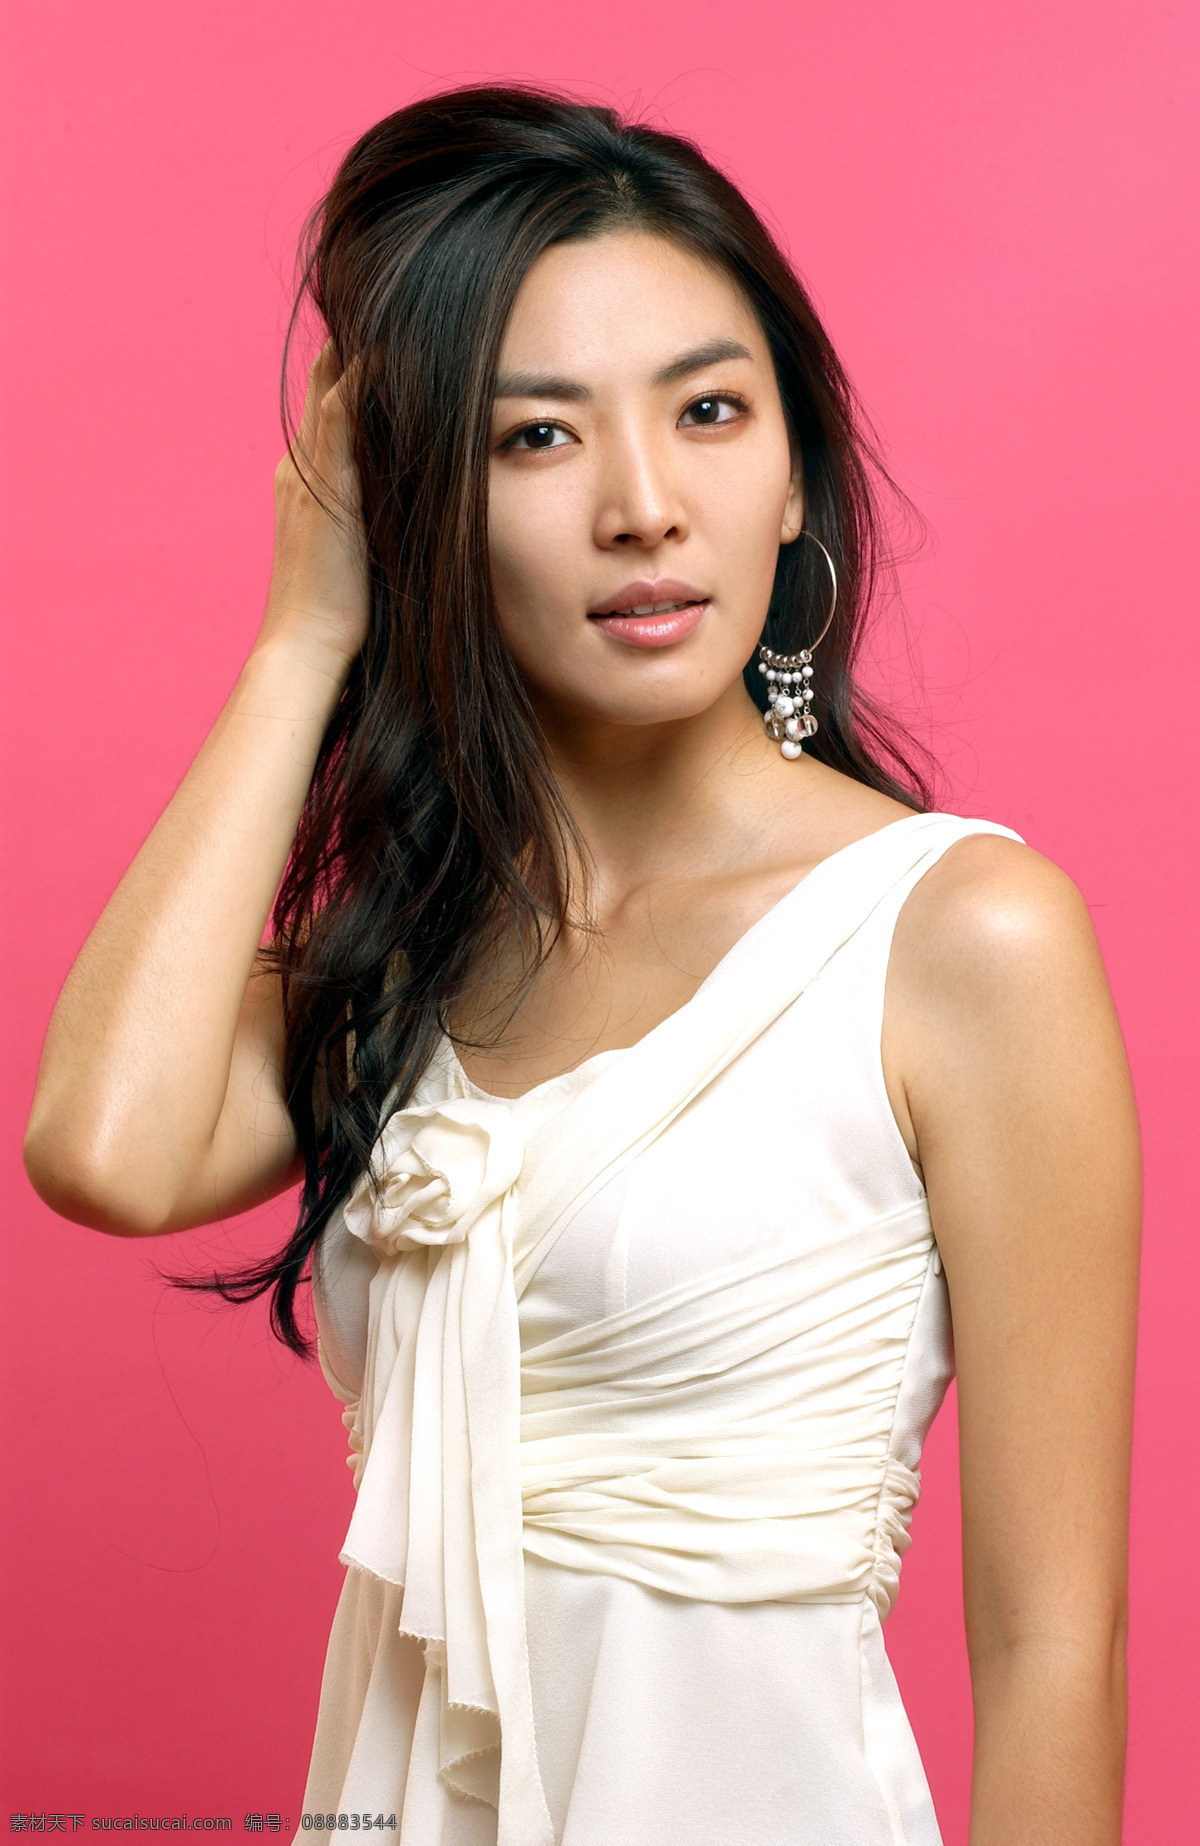 韩国 女明星 偶像 明星偶像 女性 女人 时尚美女 明星 性感美女 美女模特 美女写真 名人明星 明星图片 人物图片